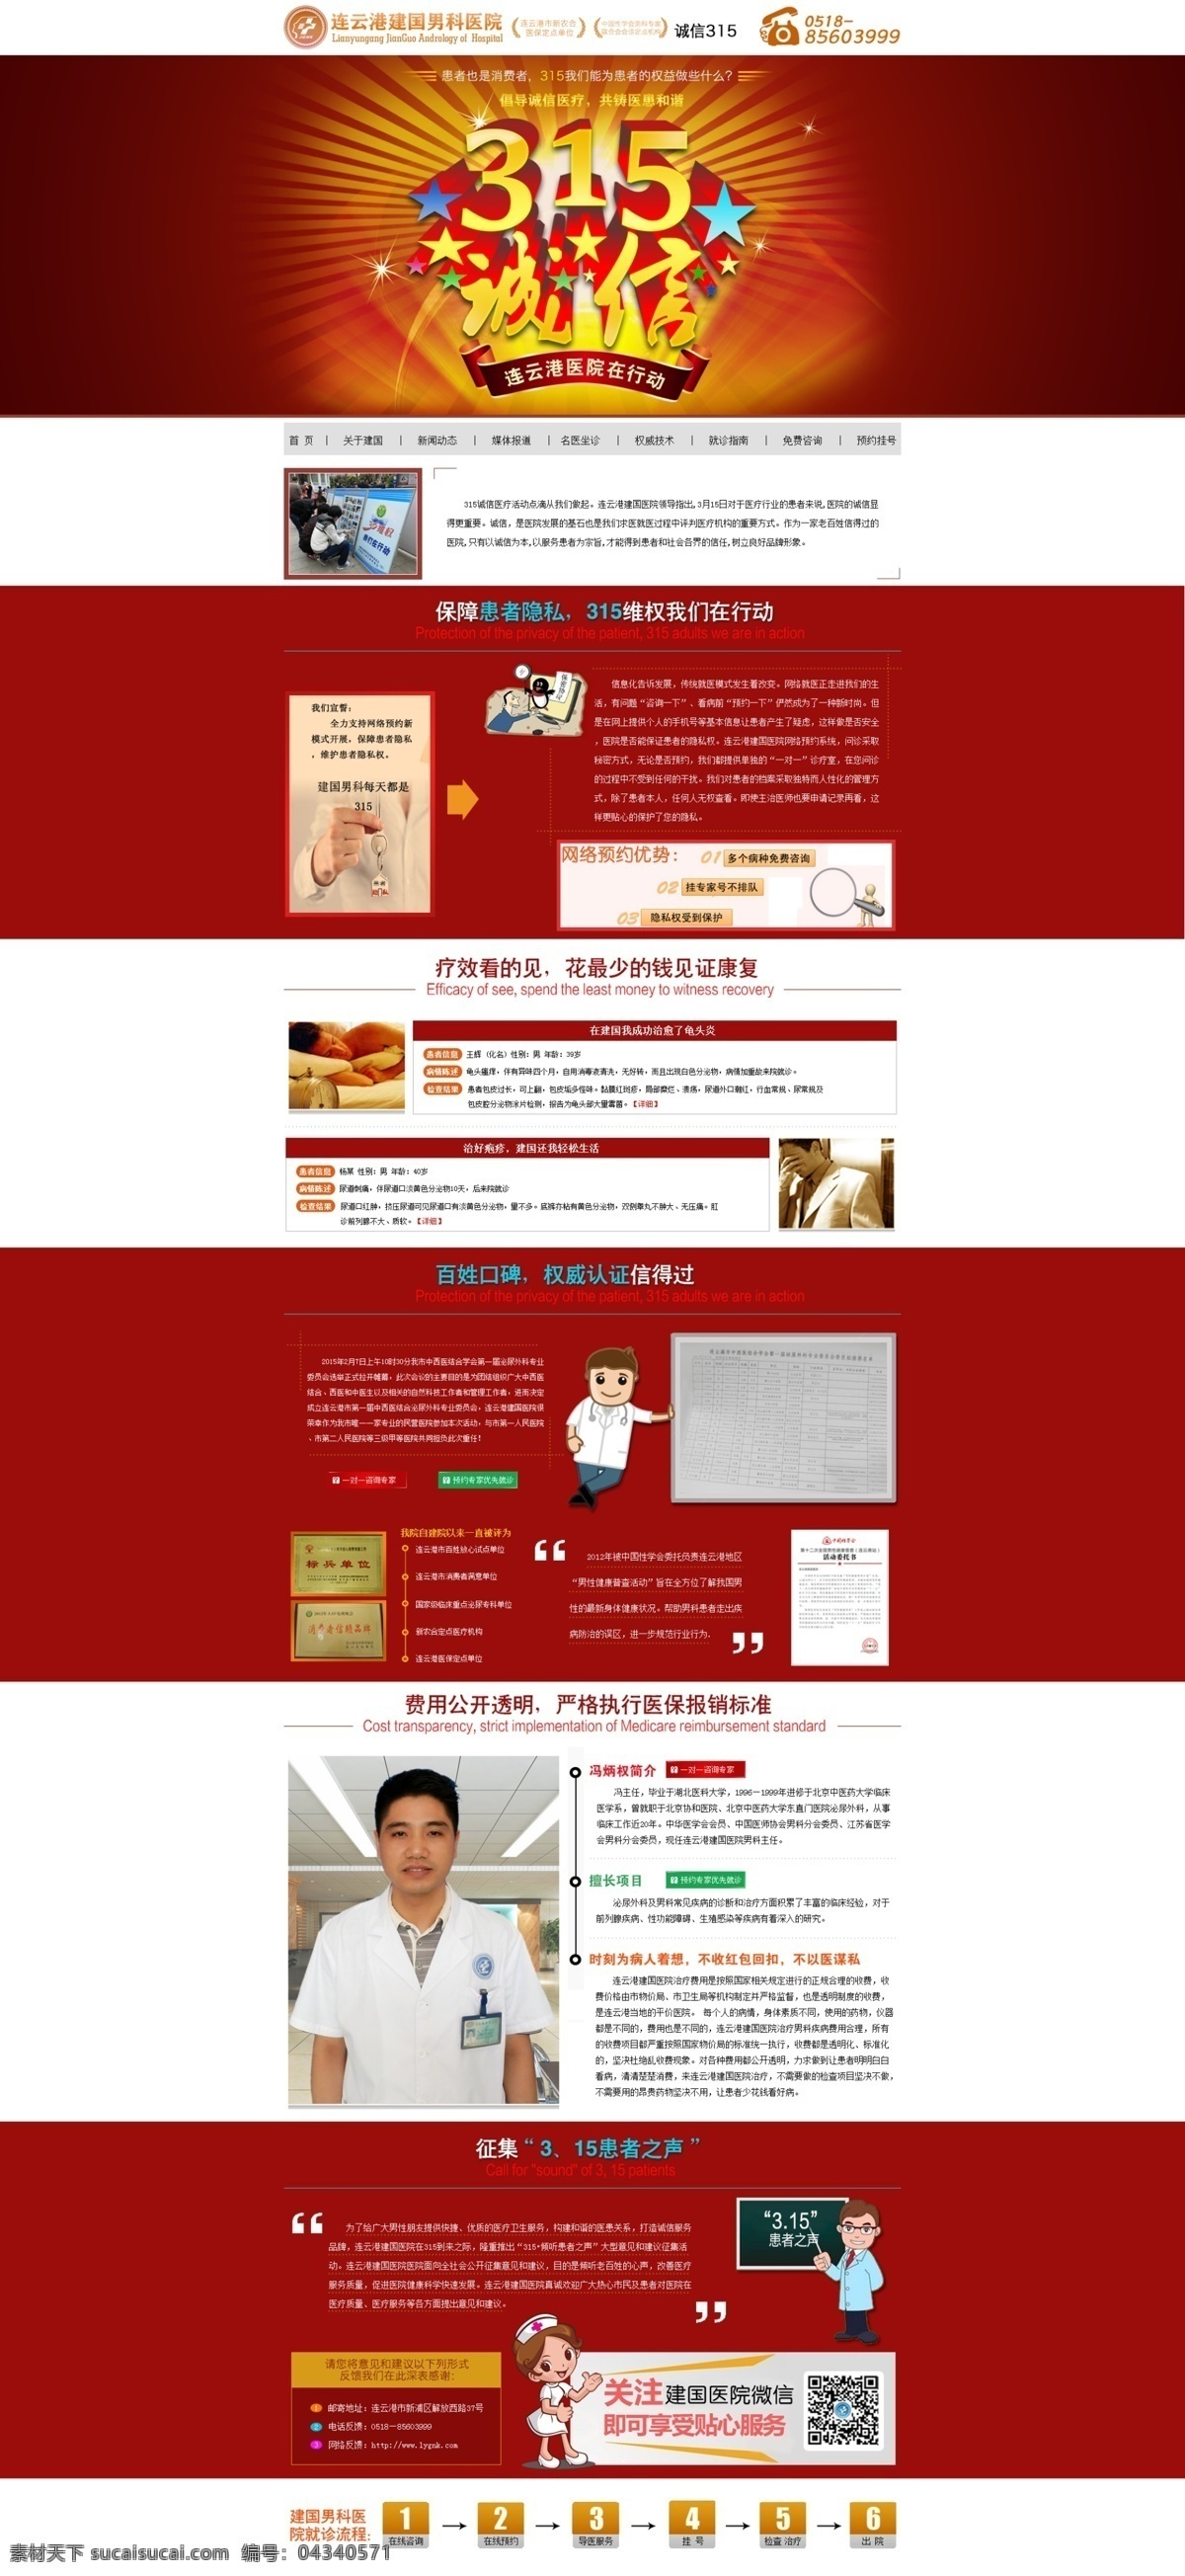 消费者 权益日 维权日 医疗 专题 维权 315医院 诚信 消费 web 界面设计 中文模板 白色